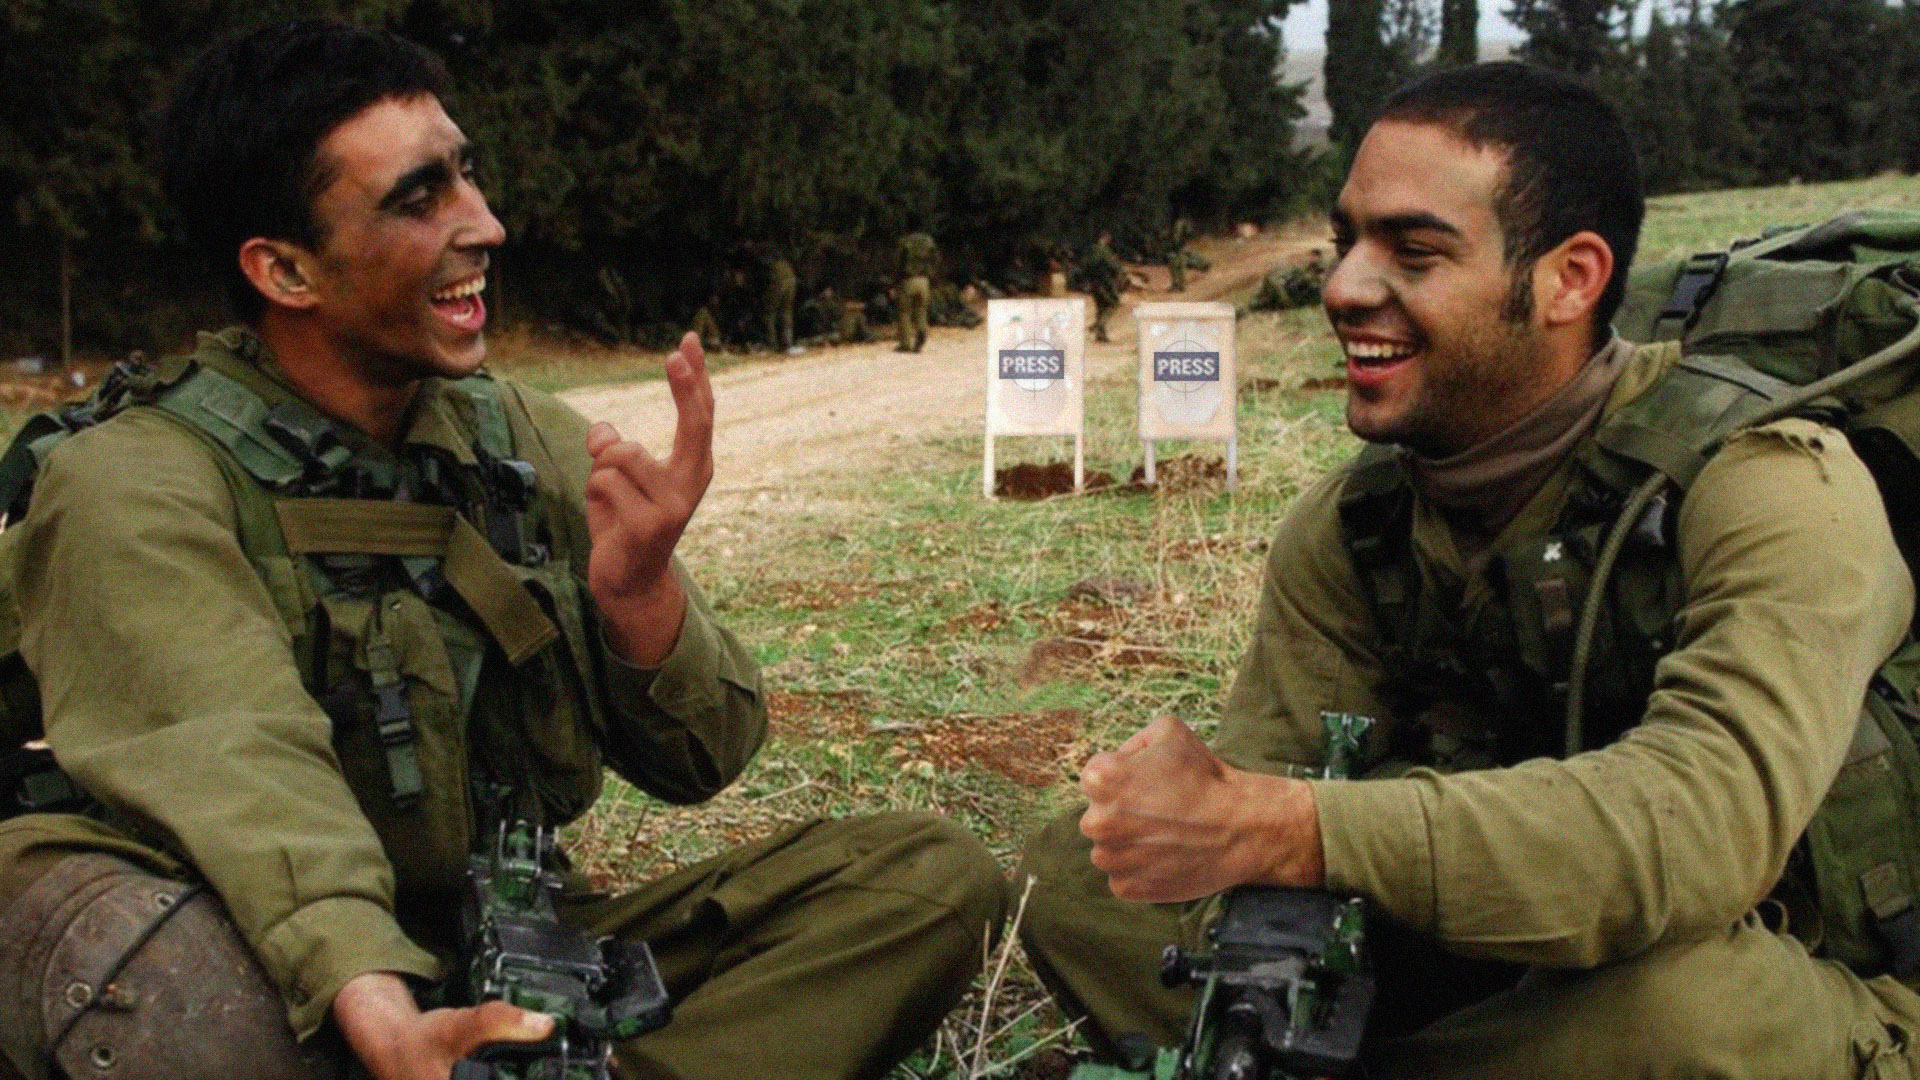 صورة جنود إسرائيليون يلعبون حجرة ورقة مقص لتحديد الصحفي الفلسطيني التالي الذي سيقتلونه